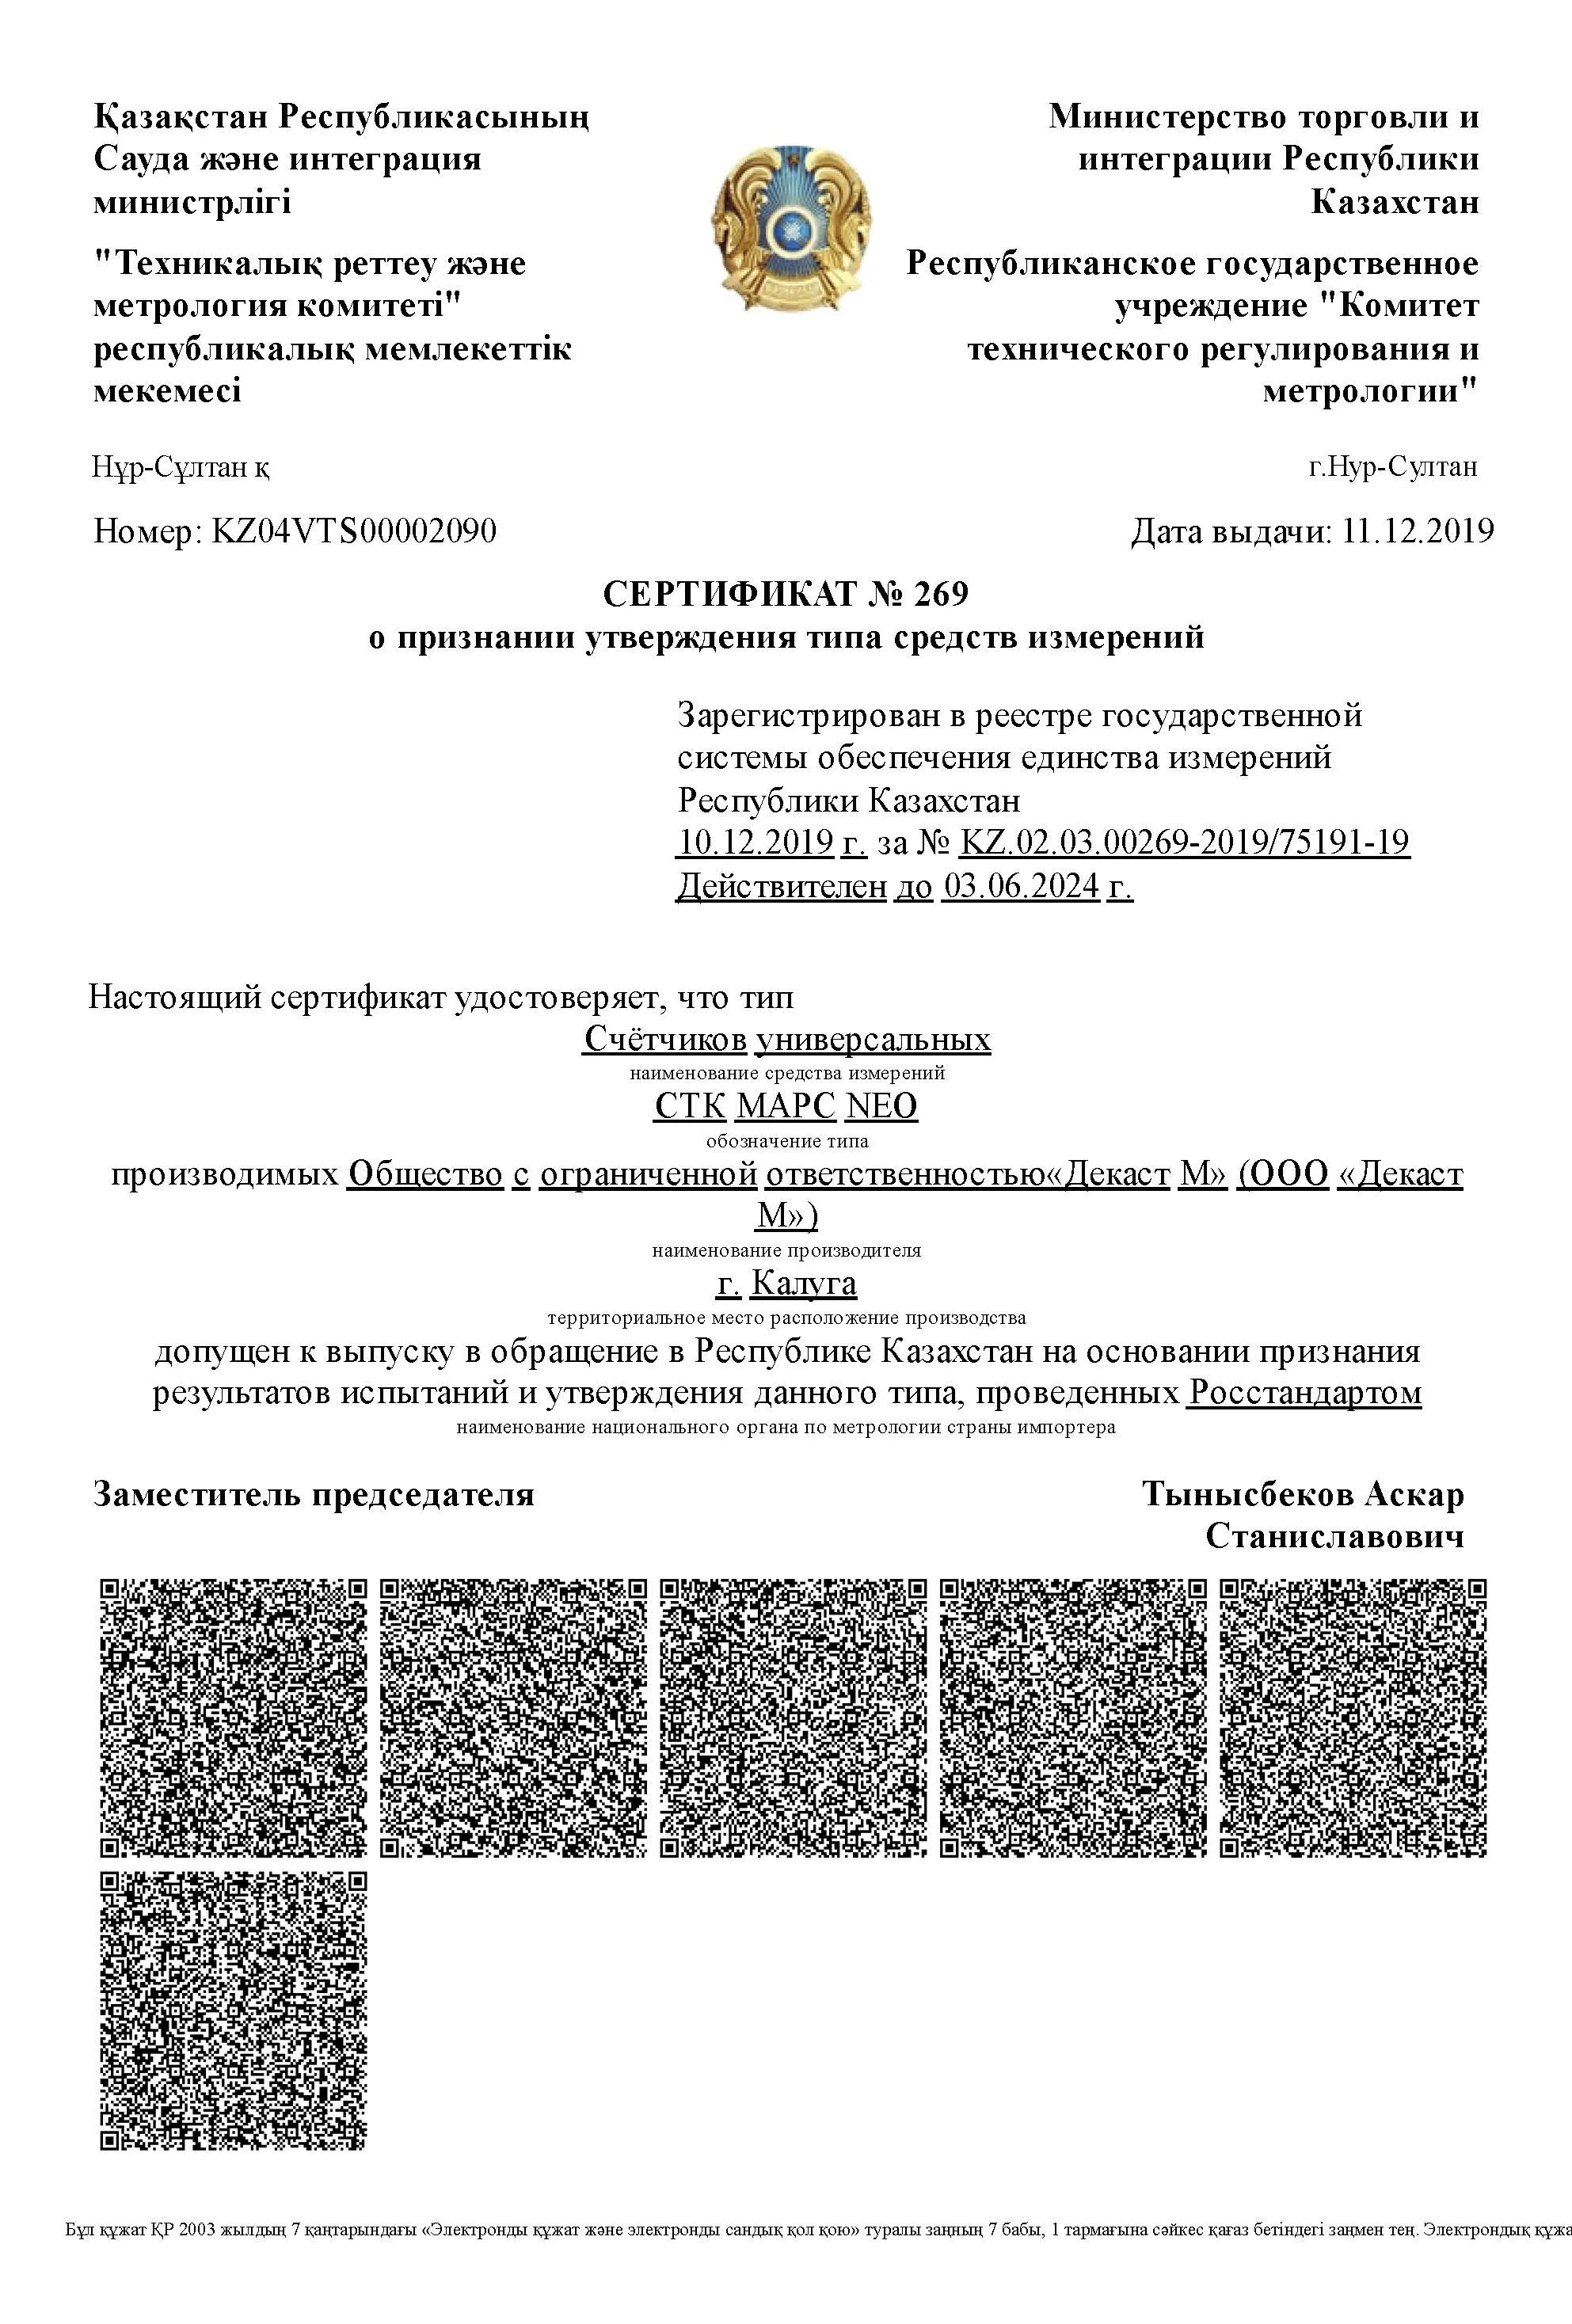 Сертификат о признании утверждения типа СТК МАРС NEO, Казахстан, до 03.06.2024